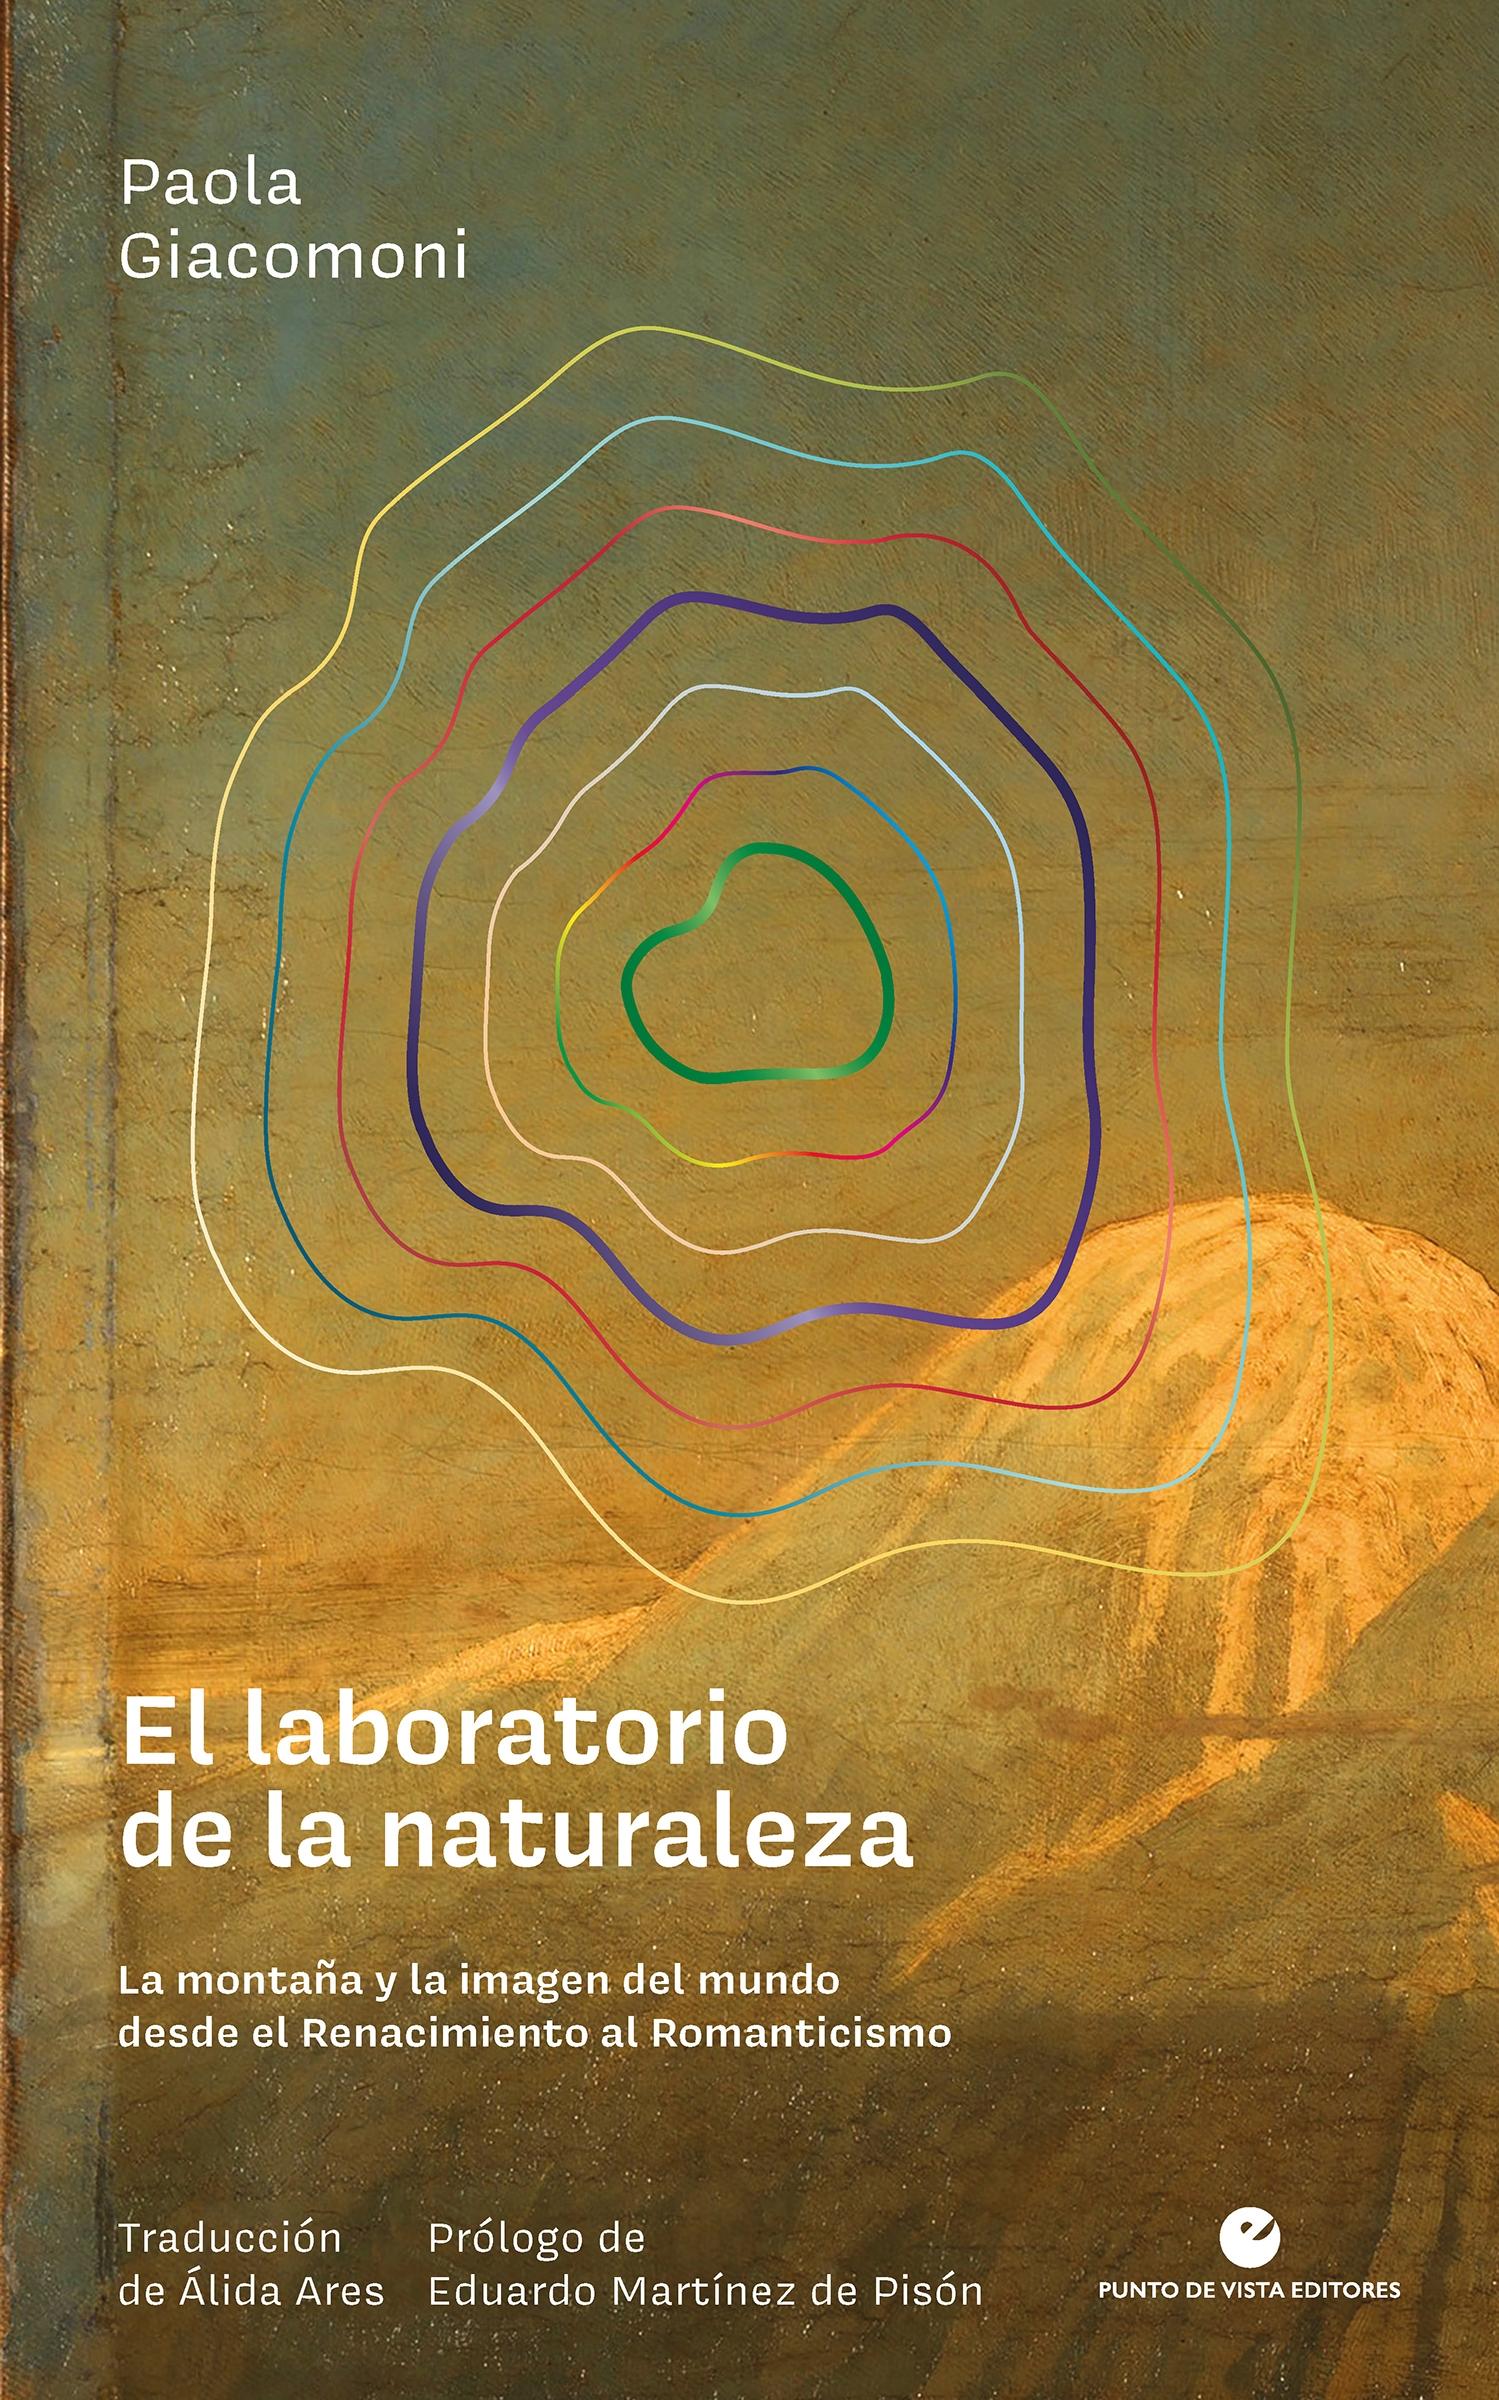 Laboratorio de la naturaleza, La "La montaña y la imagen del mundo desde el Renacimiento al Romanticismo"